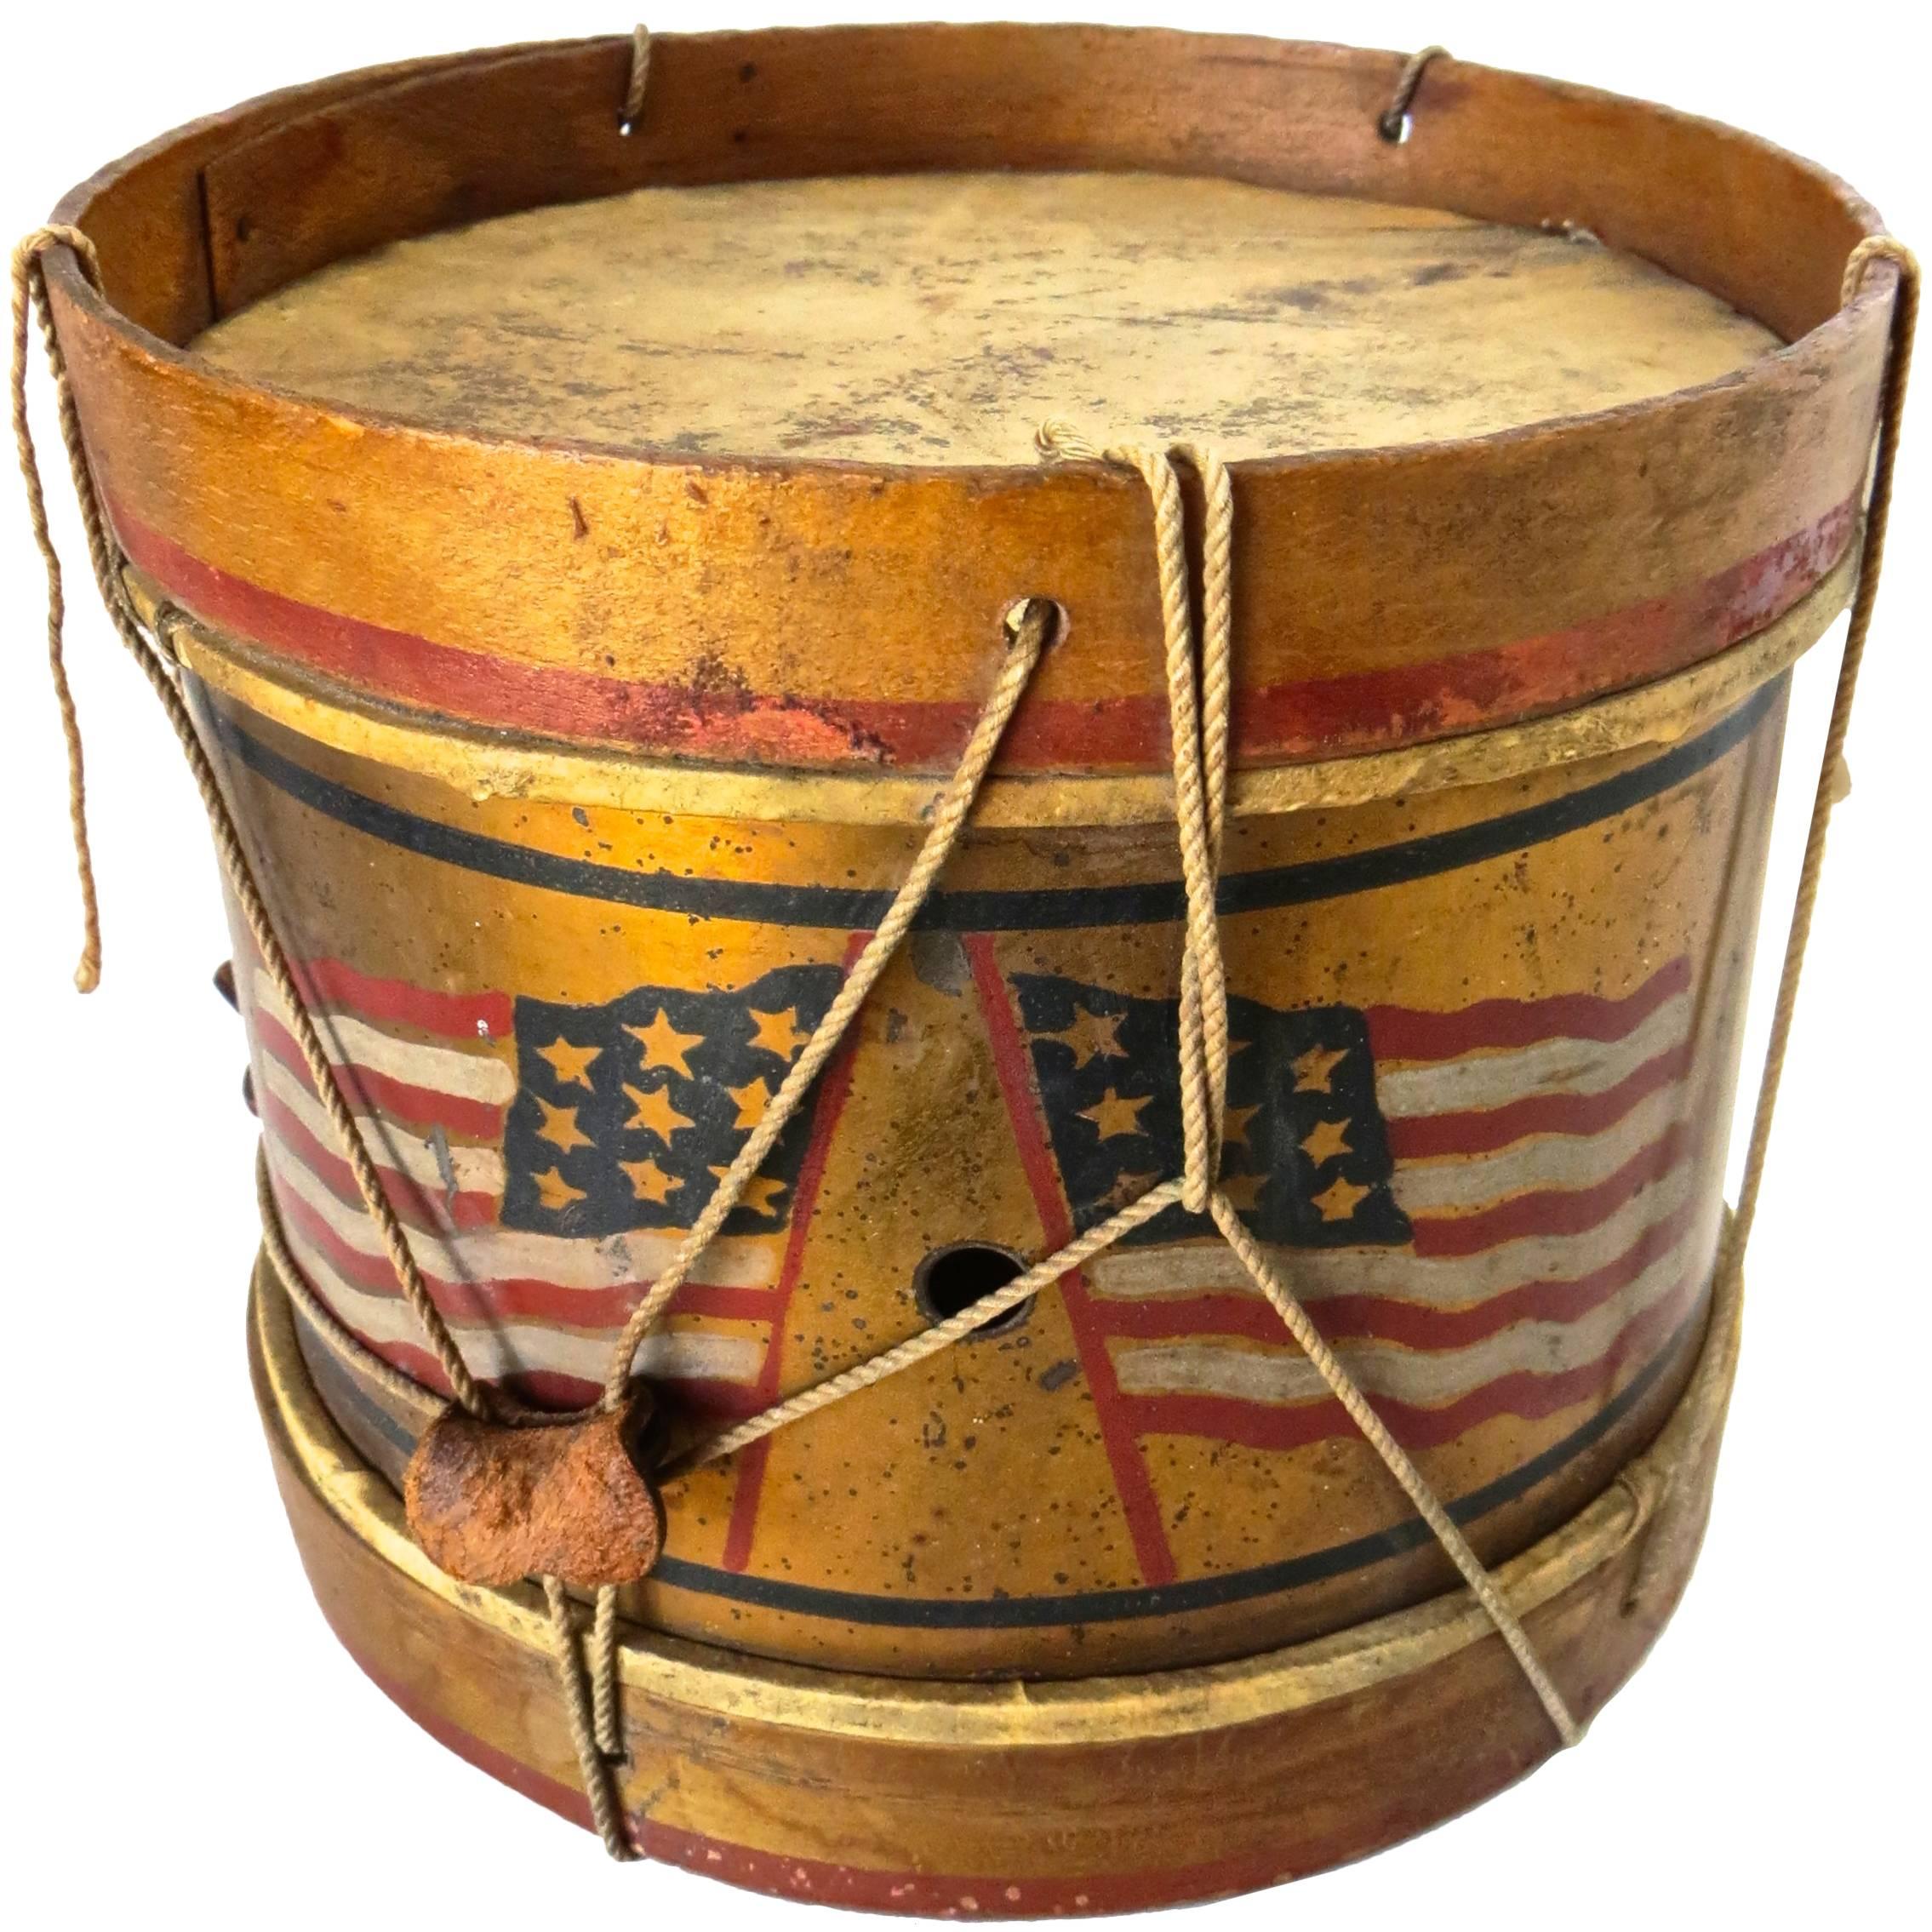 Patriotic Child's Toy Drum, circa 1890s